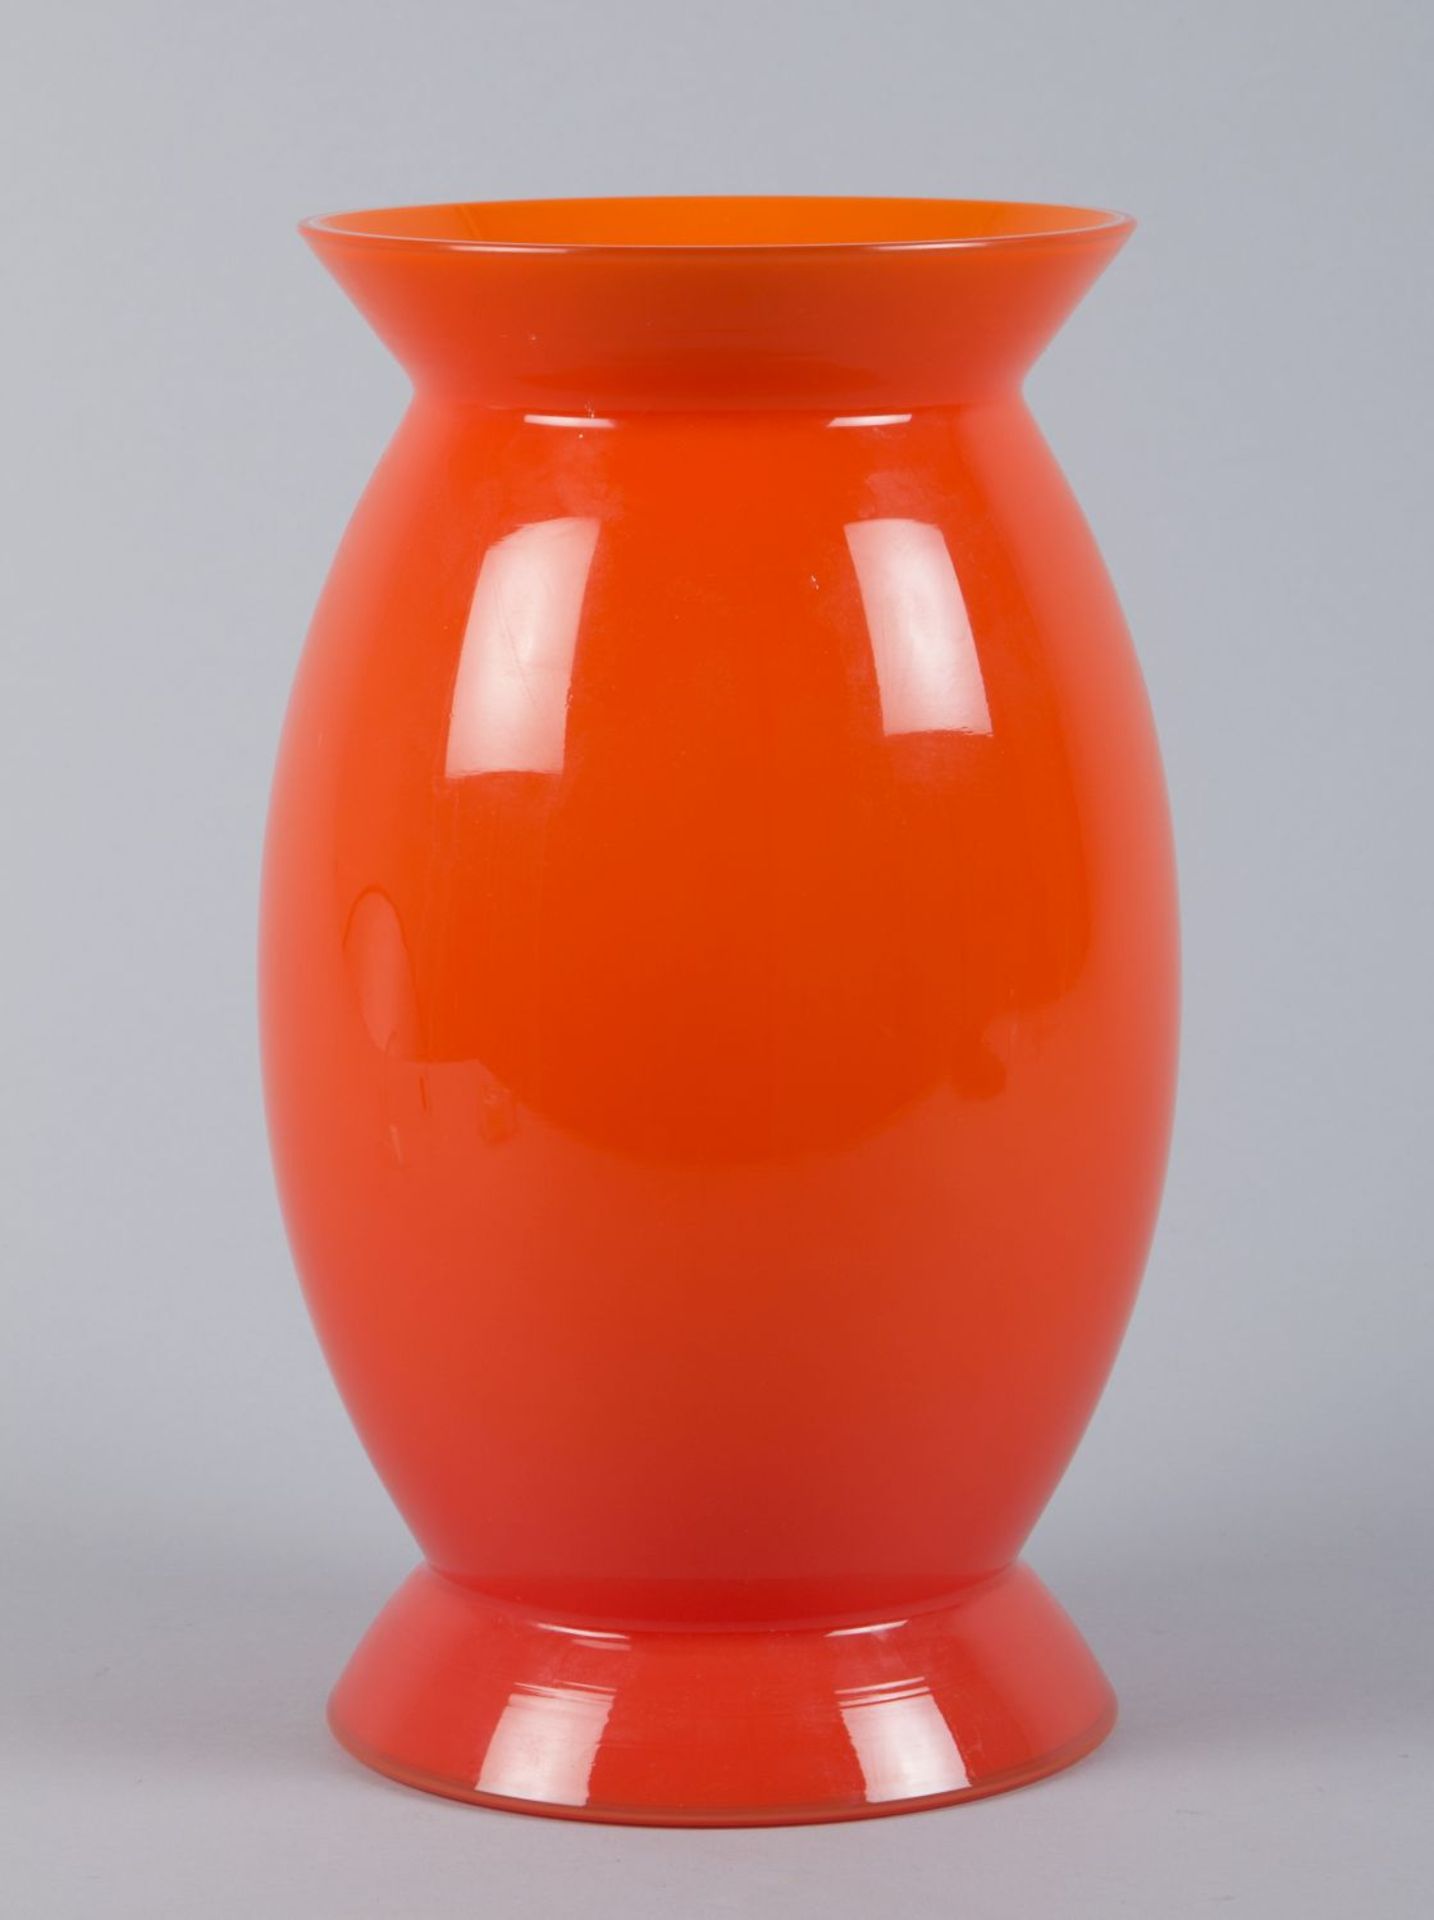 Murano-Vase "incamiciato"Farbloses Glas, orange unterfangen. Im Boden bez. venini 2002 A. Mendini.